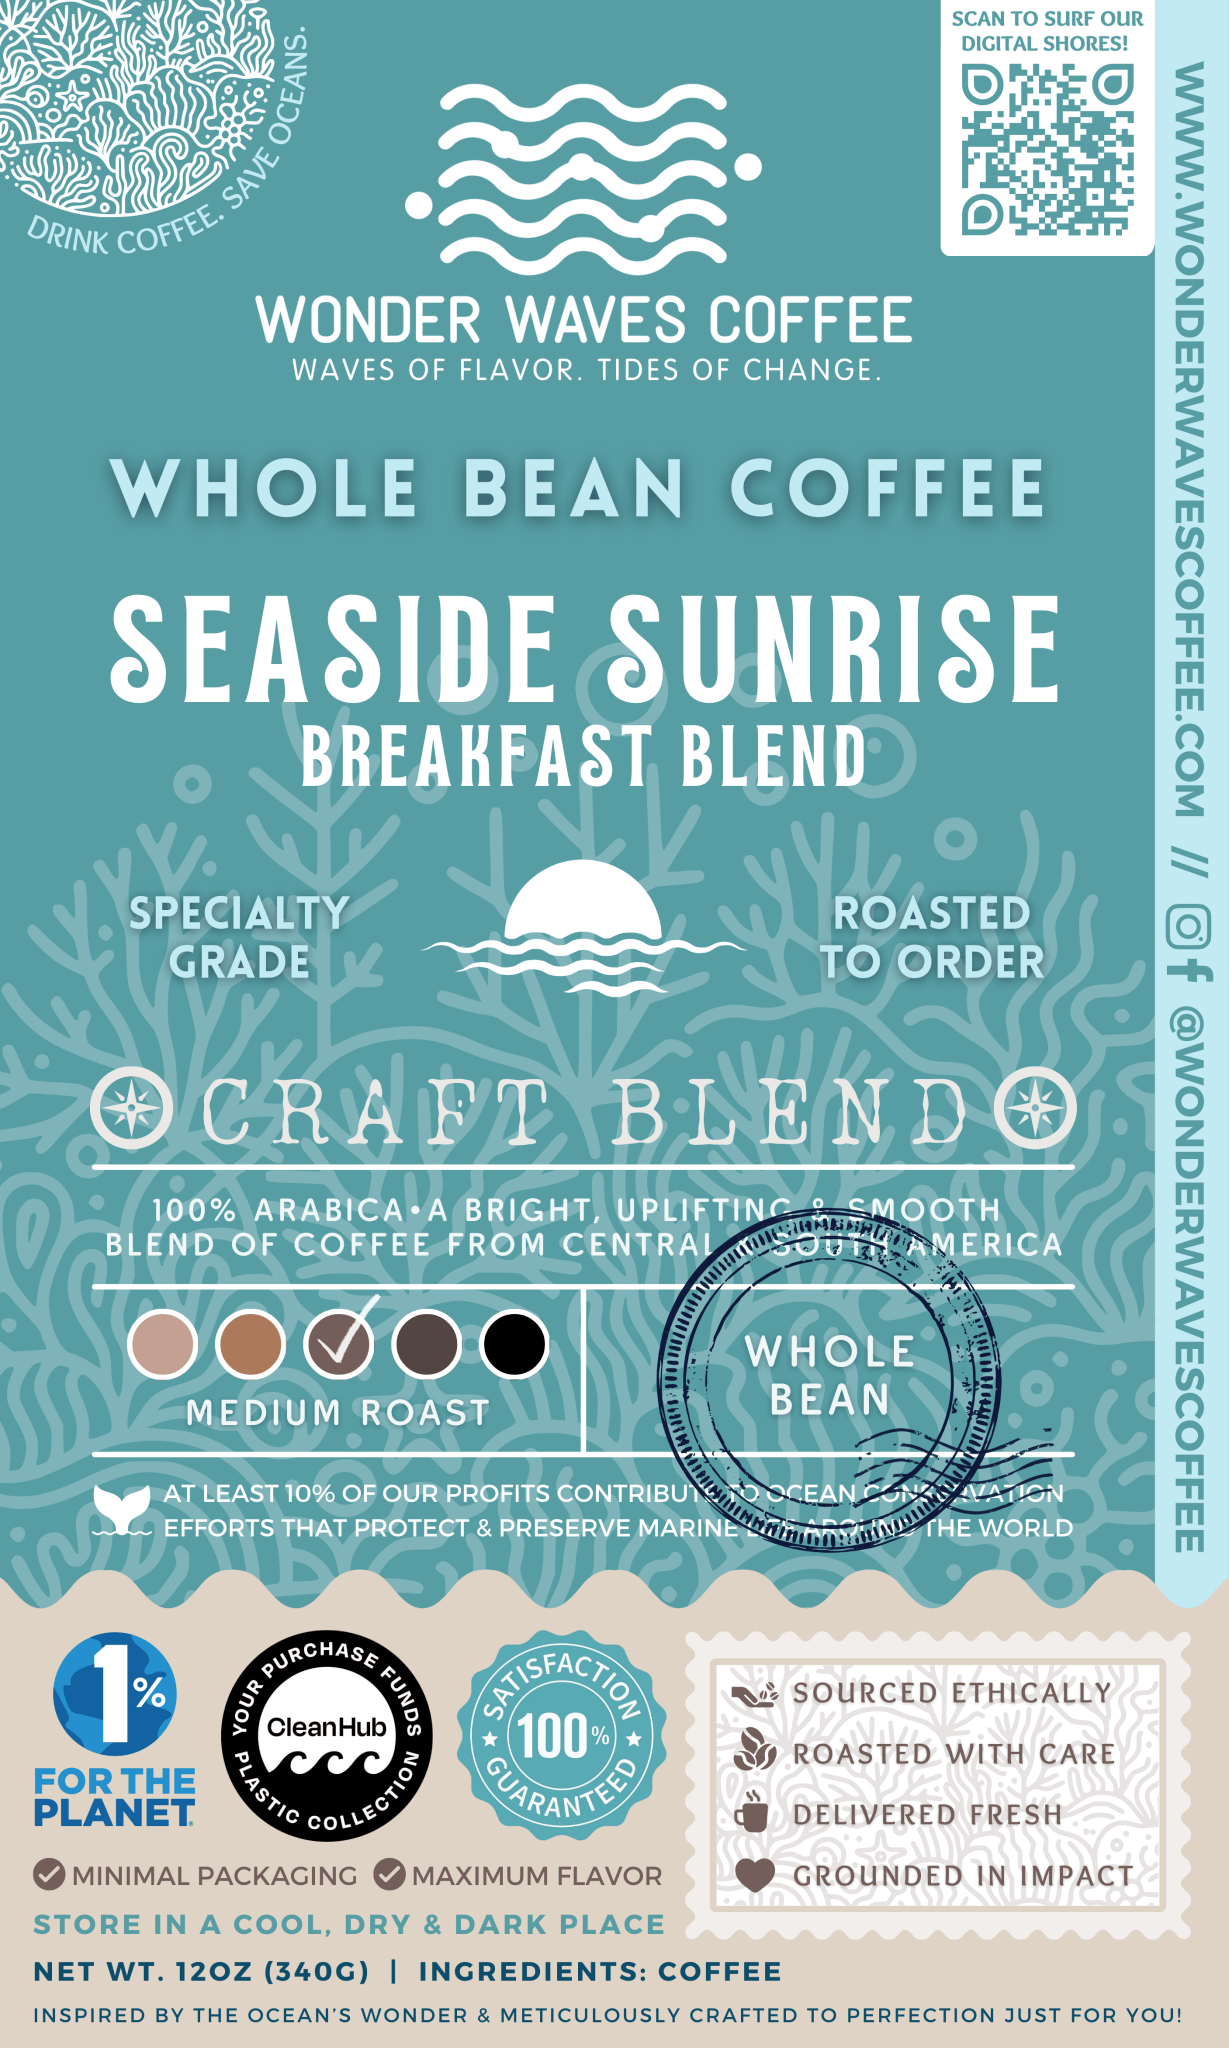 Seaside Sunrise: Breakfast Blend 〰 Craft Blend Specialty Coffee (Medium Roast) - Wonder Waves Coffee